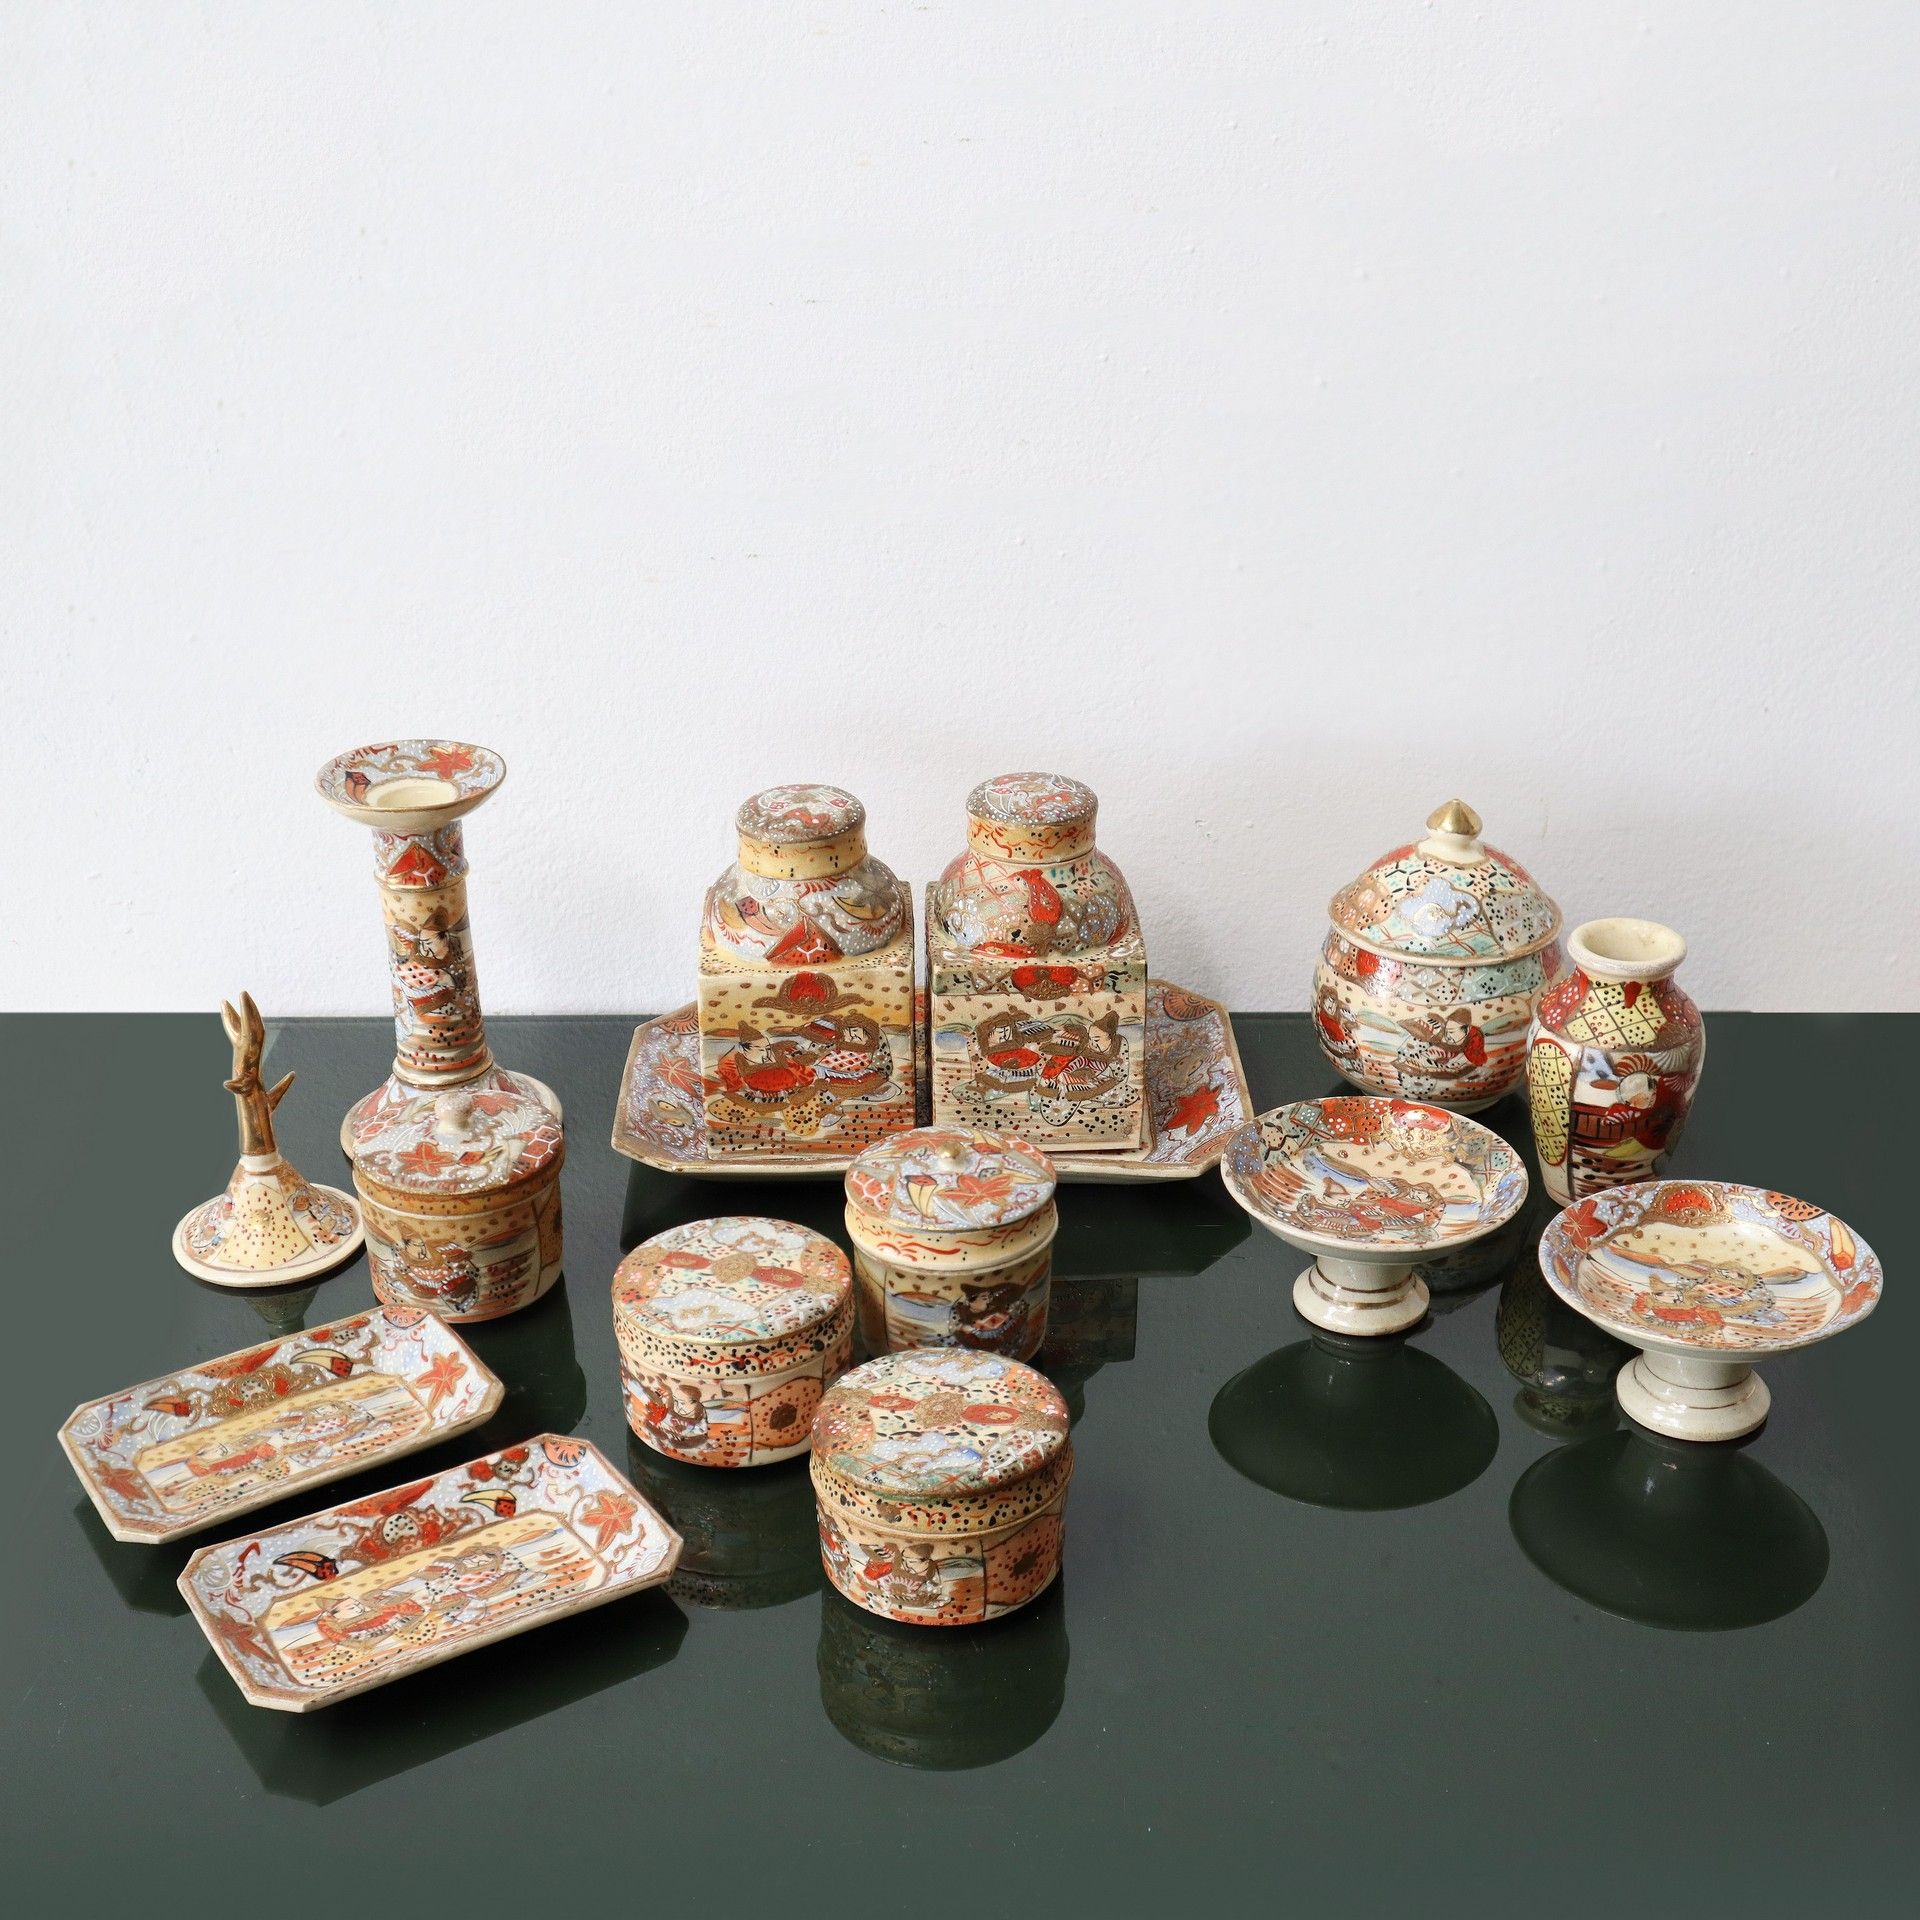 薩摩焼 Royal Satsuma 萨摩焼 皇家萨摩 - 日本瓷器仪式套装，19世纪末 烛台高14厘米，罐子高最小5，最大11，托盘最小12x8厘米，最大21x&hellip;